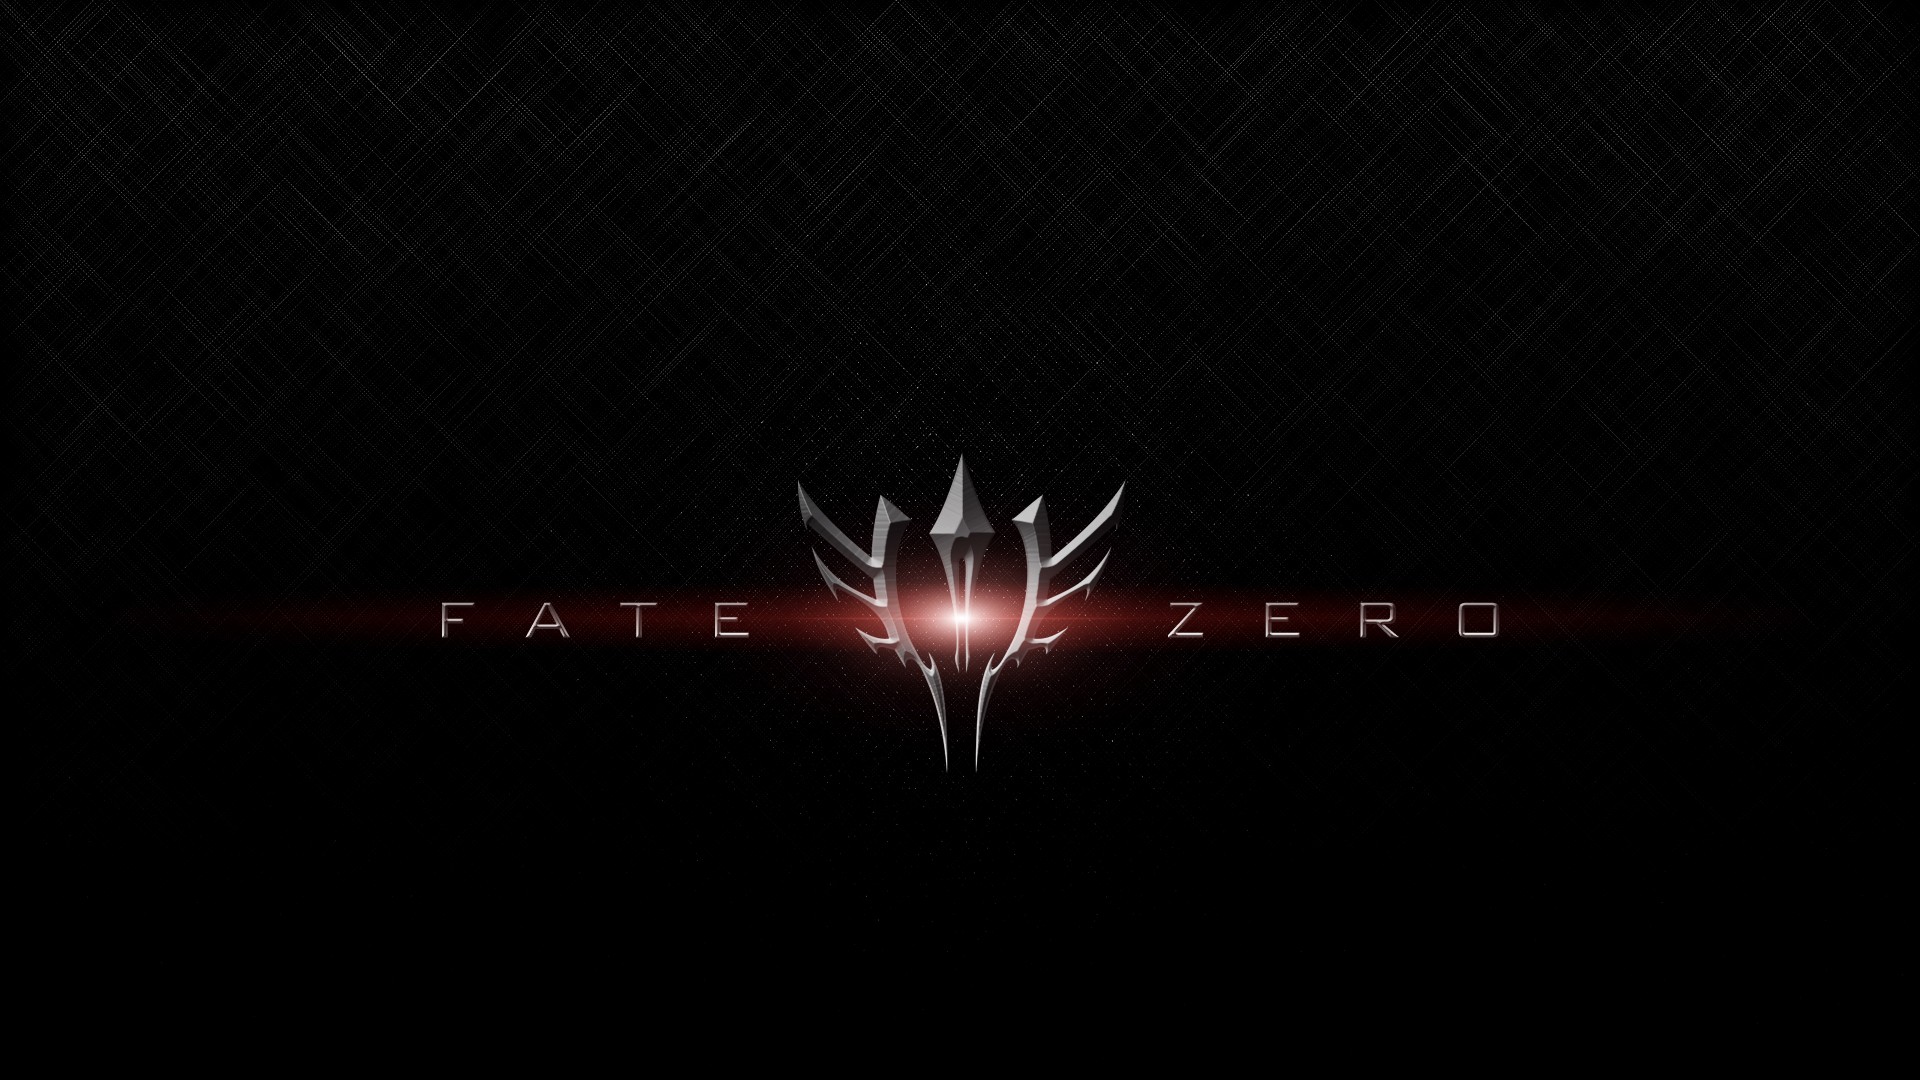 Download mobile wallpaper Fate/zero, Fate Series, Anime for free.